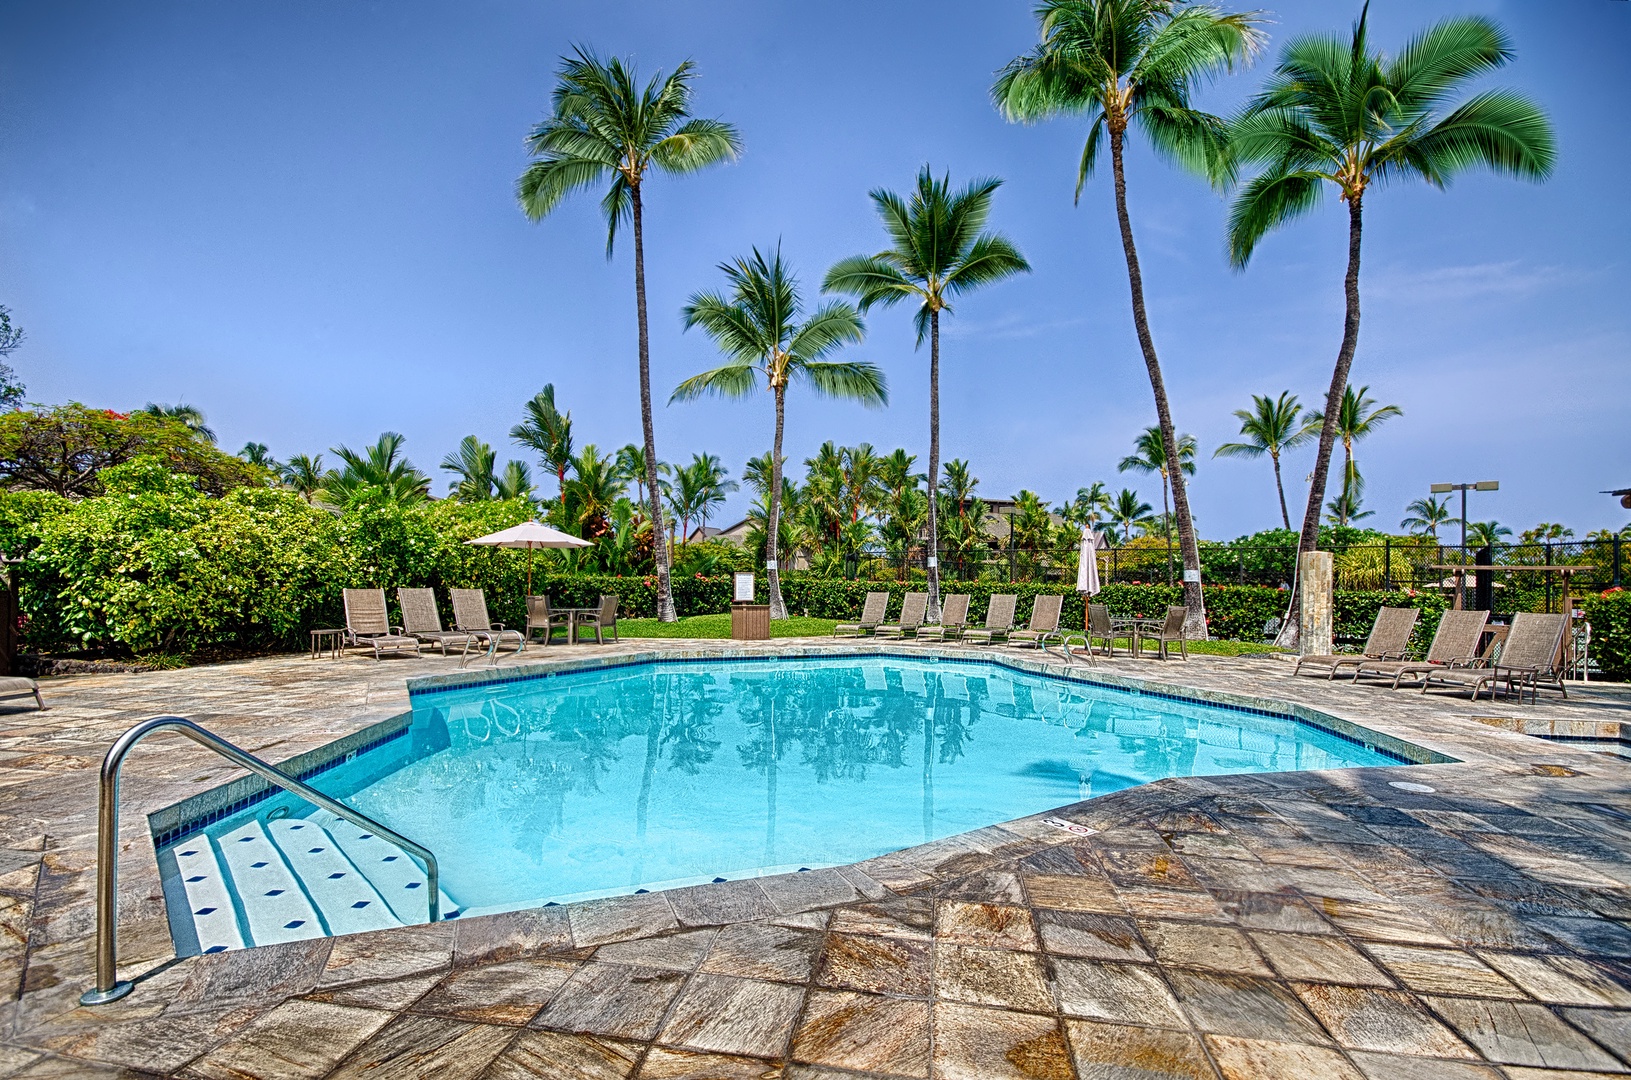 Kailua Kona Vacation Rentals, Kanaloa at Kona 701 - One of three pools